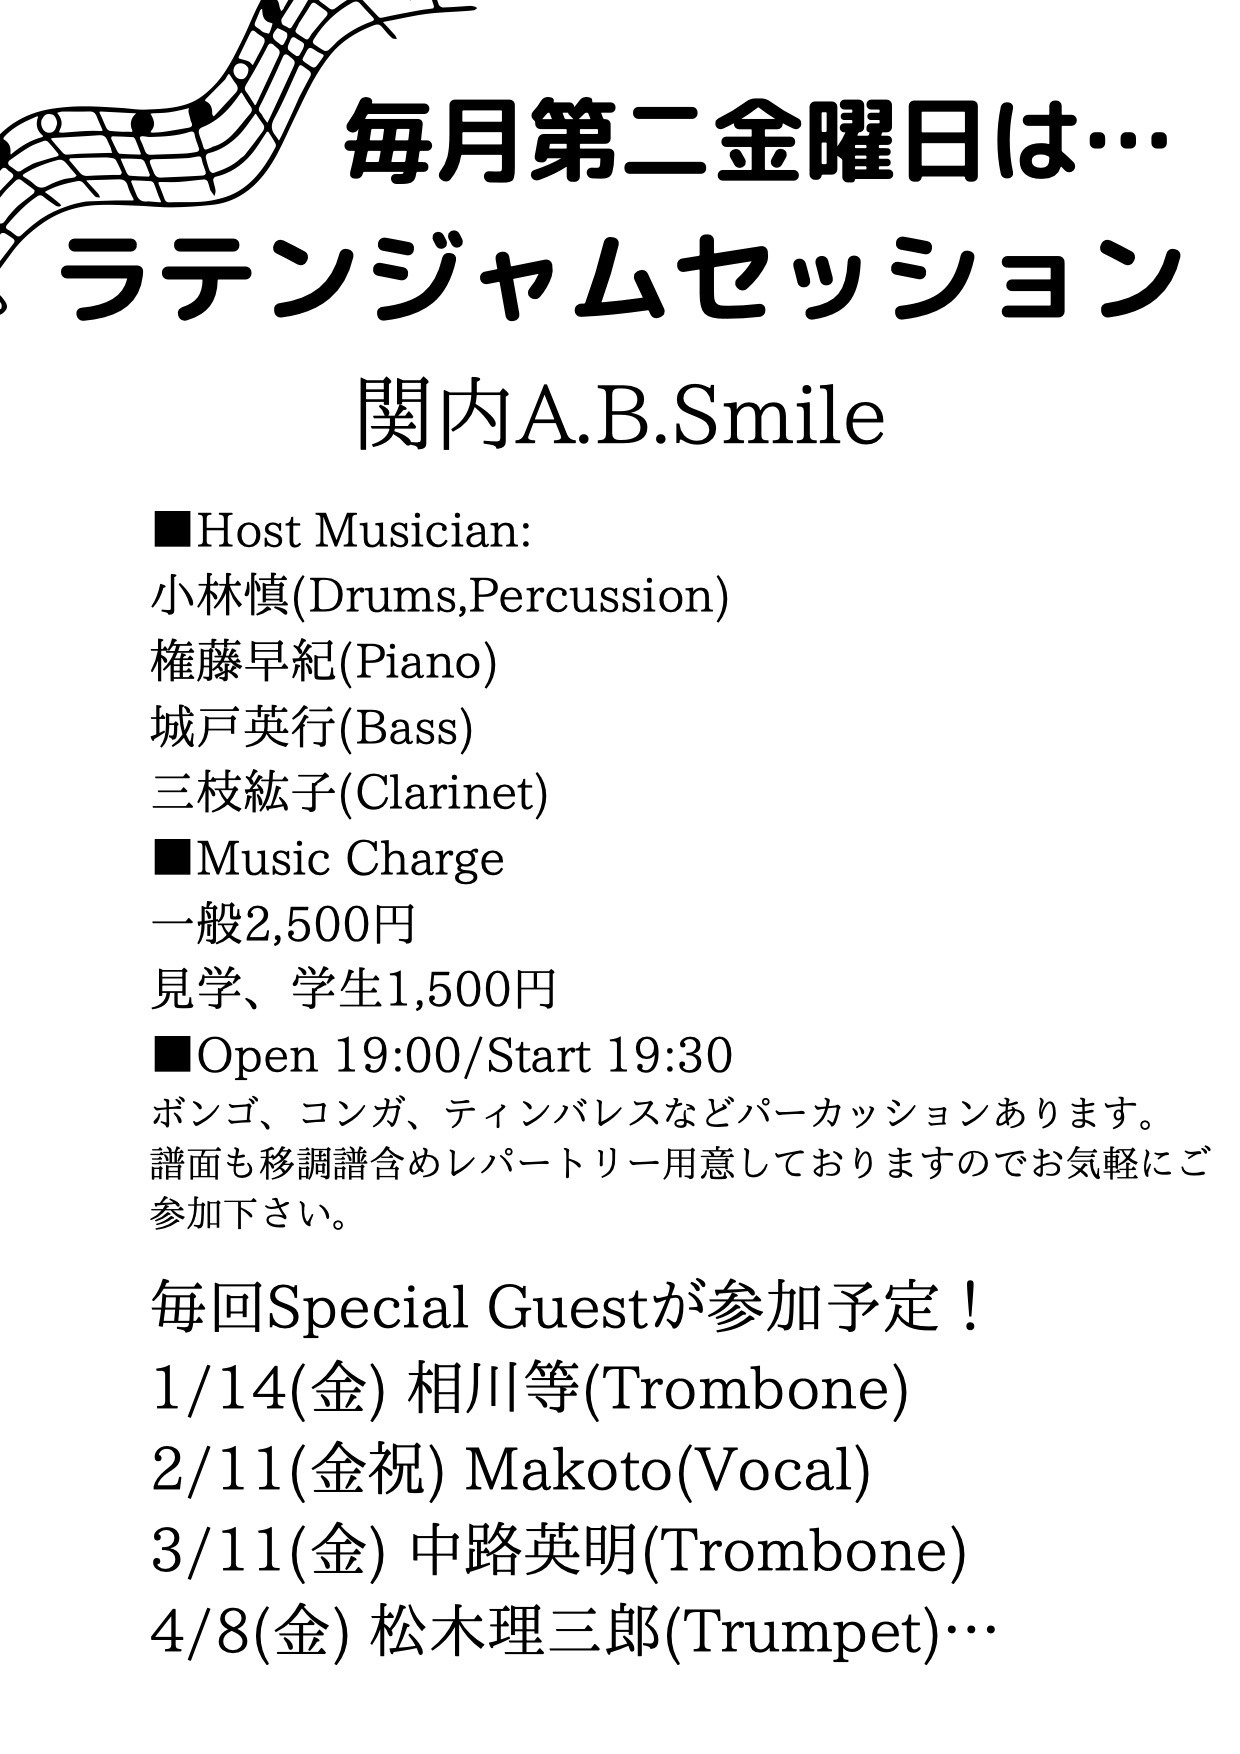 2022/2/11(金祝)「Latin Jam Session」 @ 関内A.B.Smile